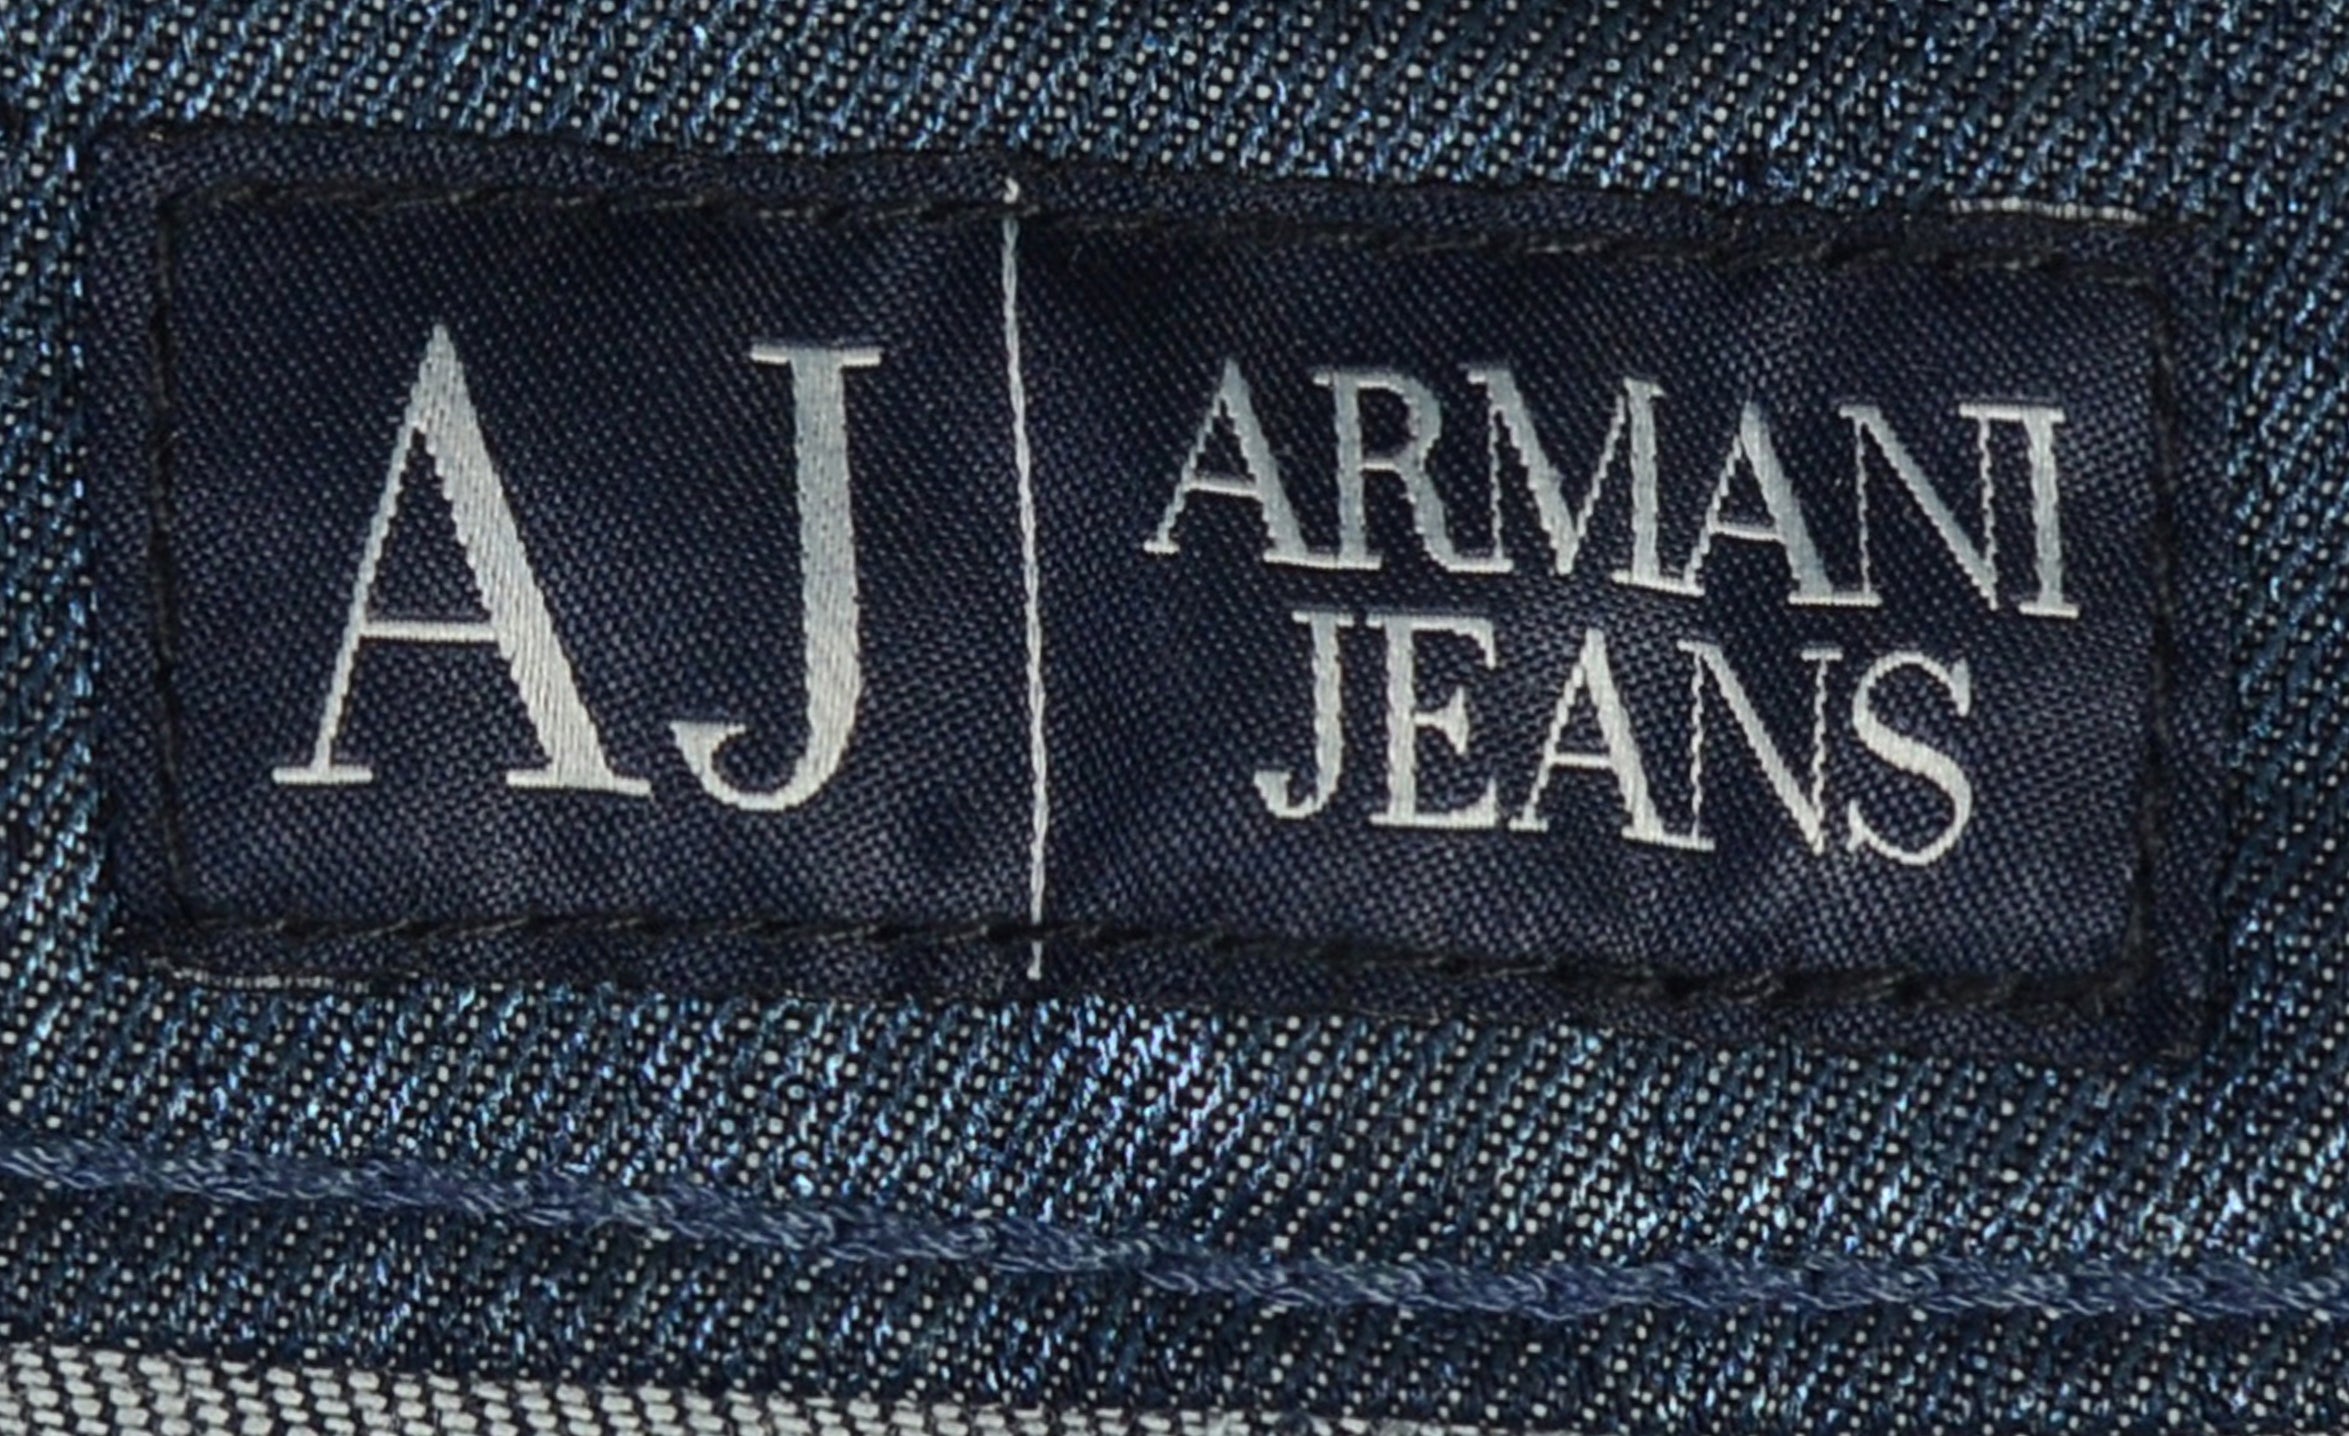 AJ JEANS Blue Cotton Stretch Jeans Pants NEW US 29 SARTORIALE